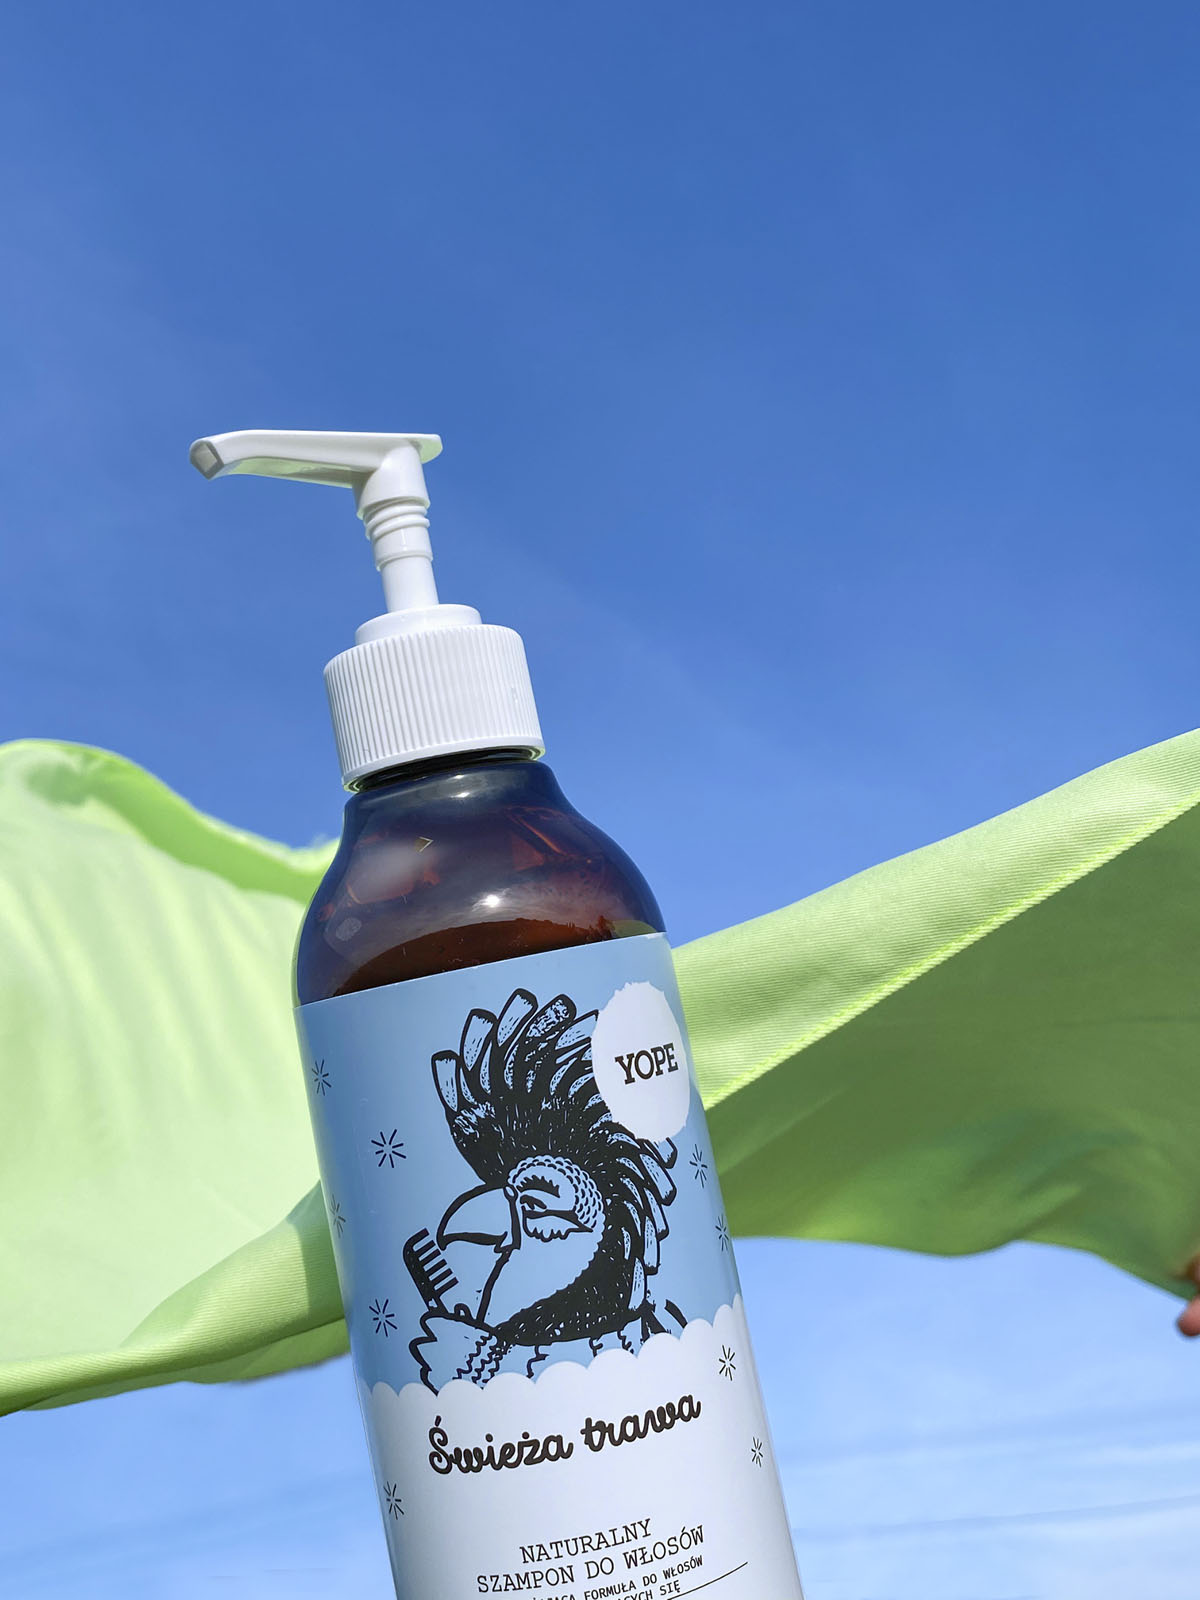 yope świeża trawa szampon do włosów